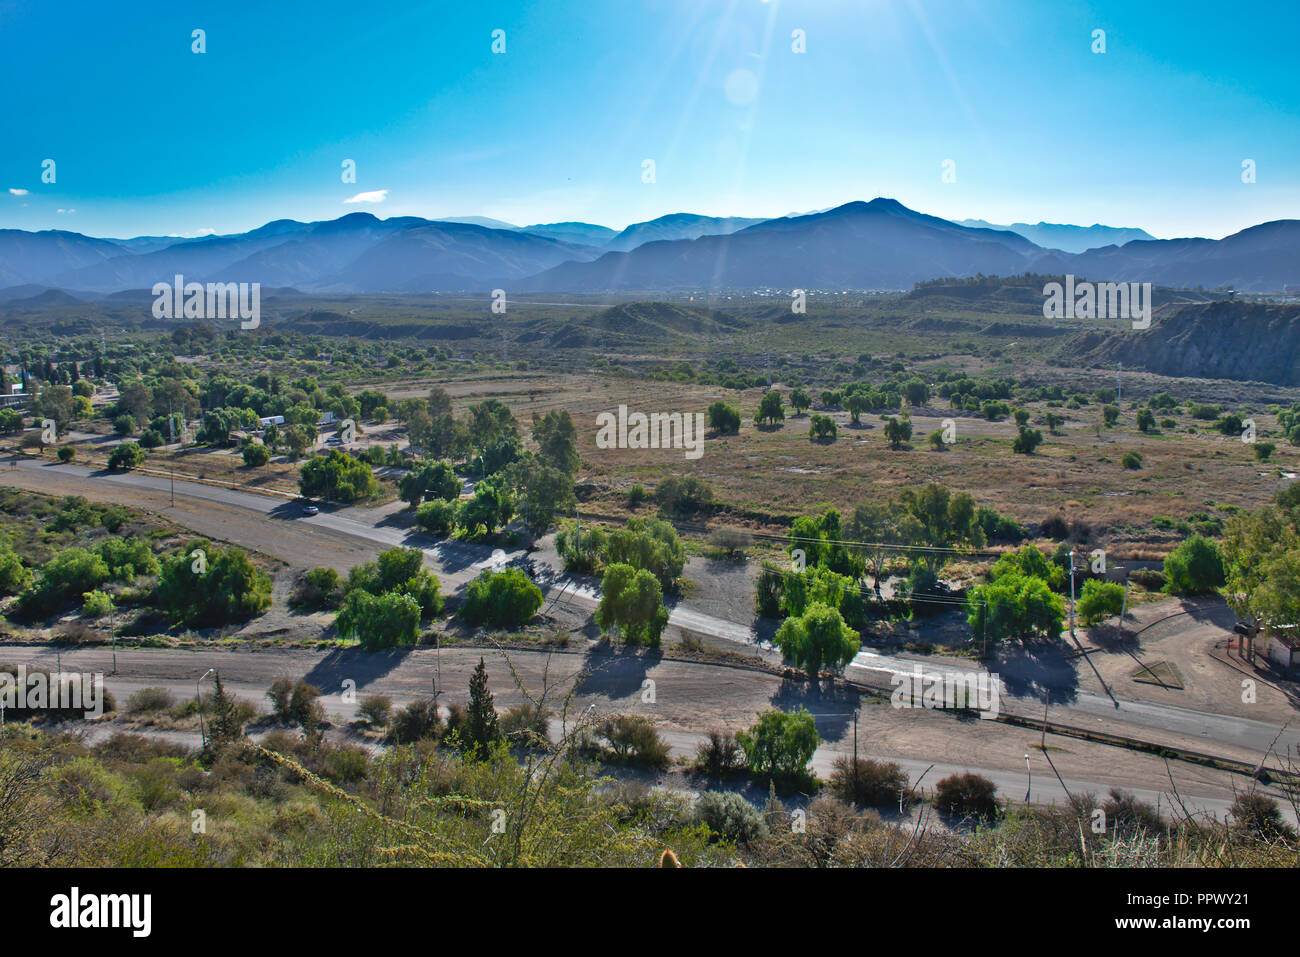 View from the Cerro de la Gloria hill in Mendoza - Argentina Stock Photo